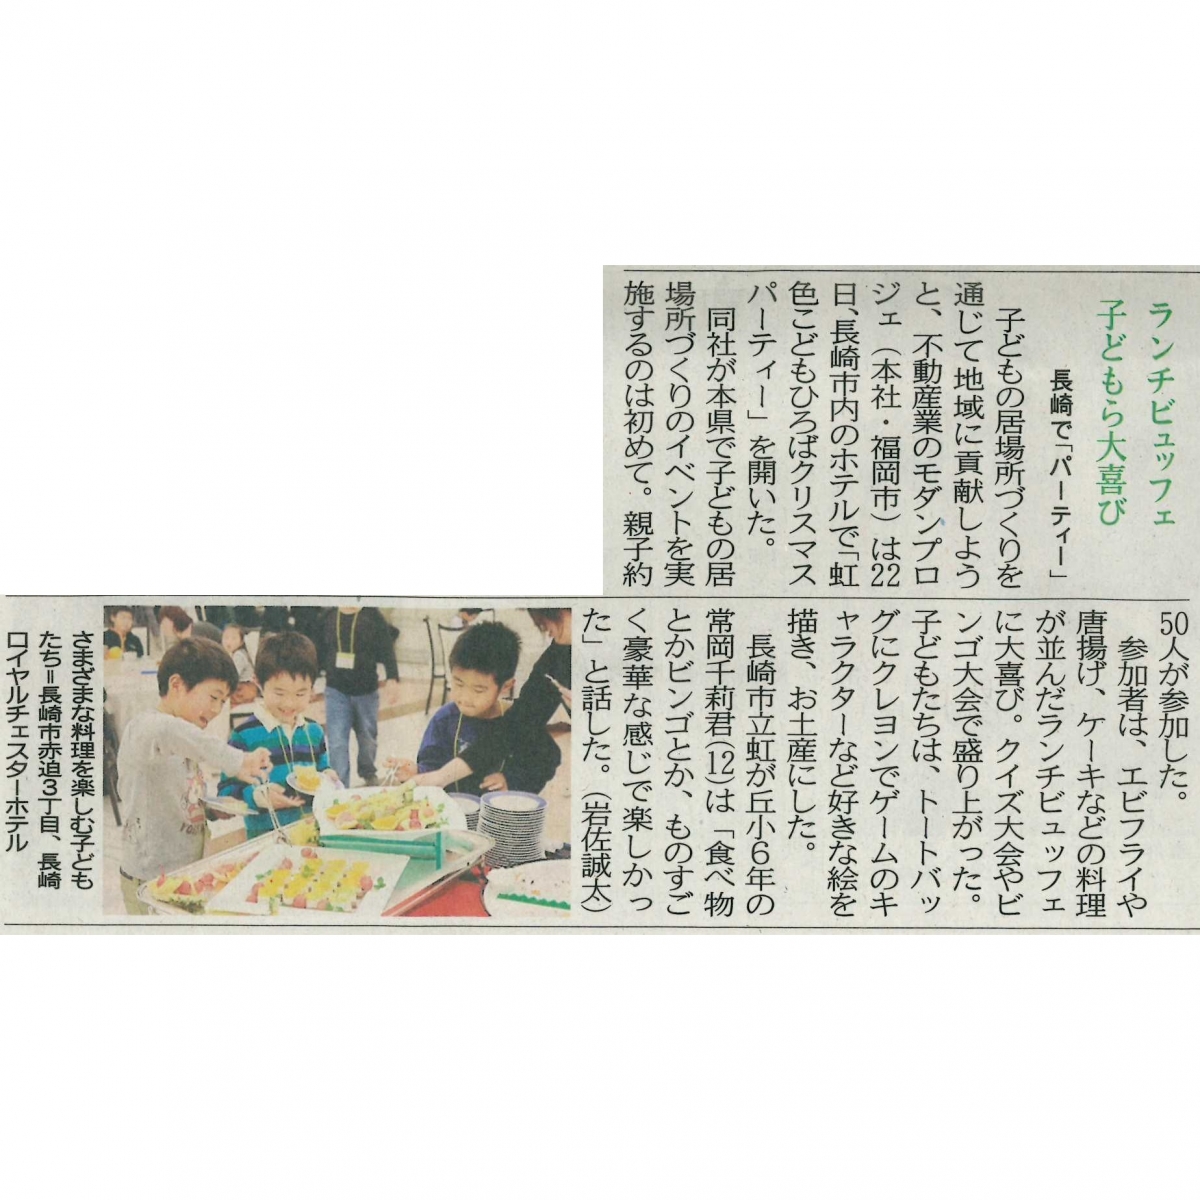 長崎新聞2018年12月23日に『虹色こどもひろばクリスマスパーティ』の様子が掲載されました。